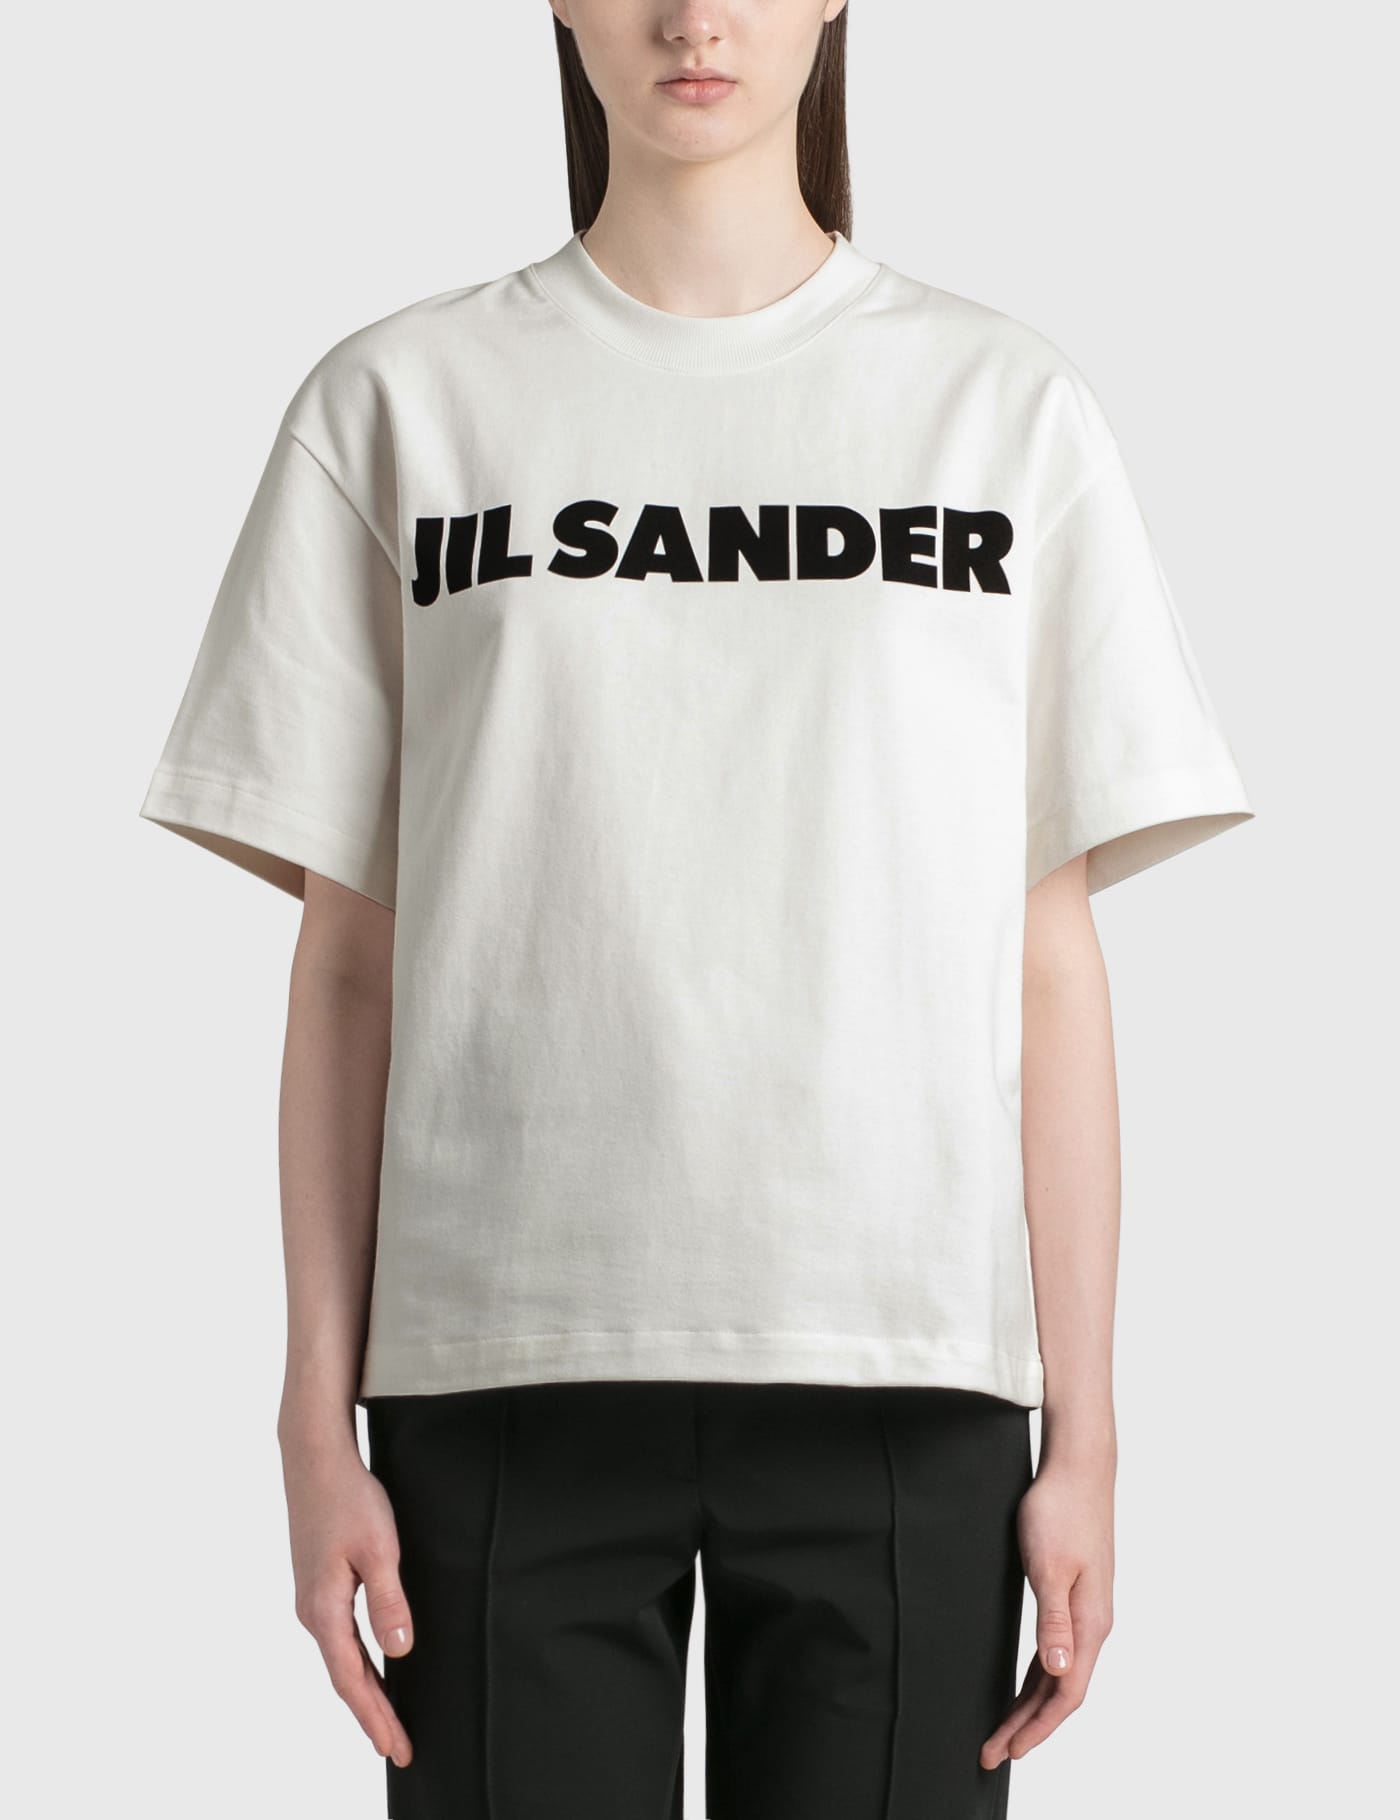 Jil Sander - Jil Sander Logo Cotton T-shirt | HBX -  ハイプビースト(Hypebeast)が厳選したグローバルファッション&ライフスタイル